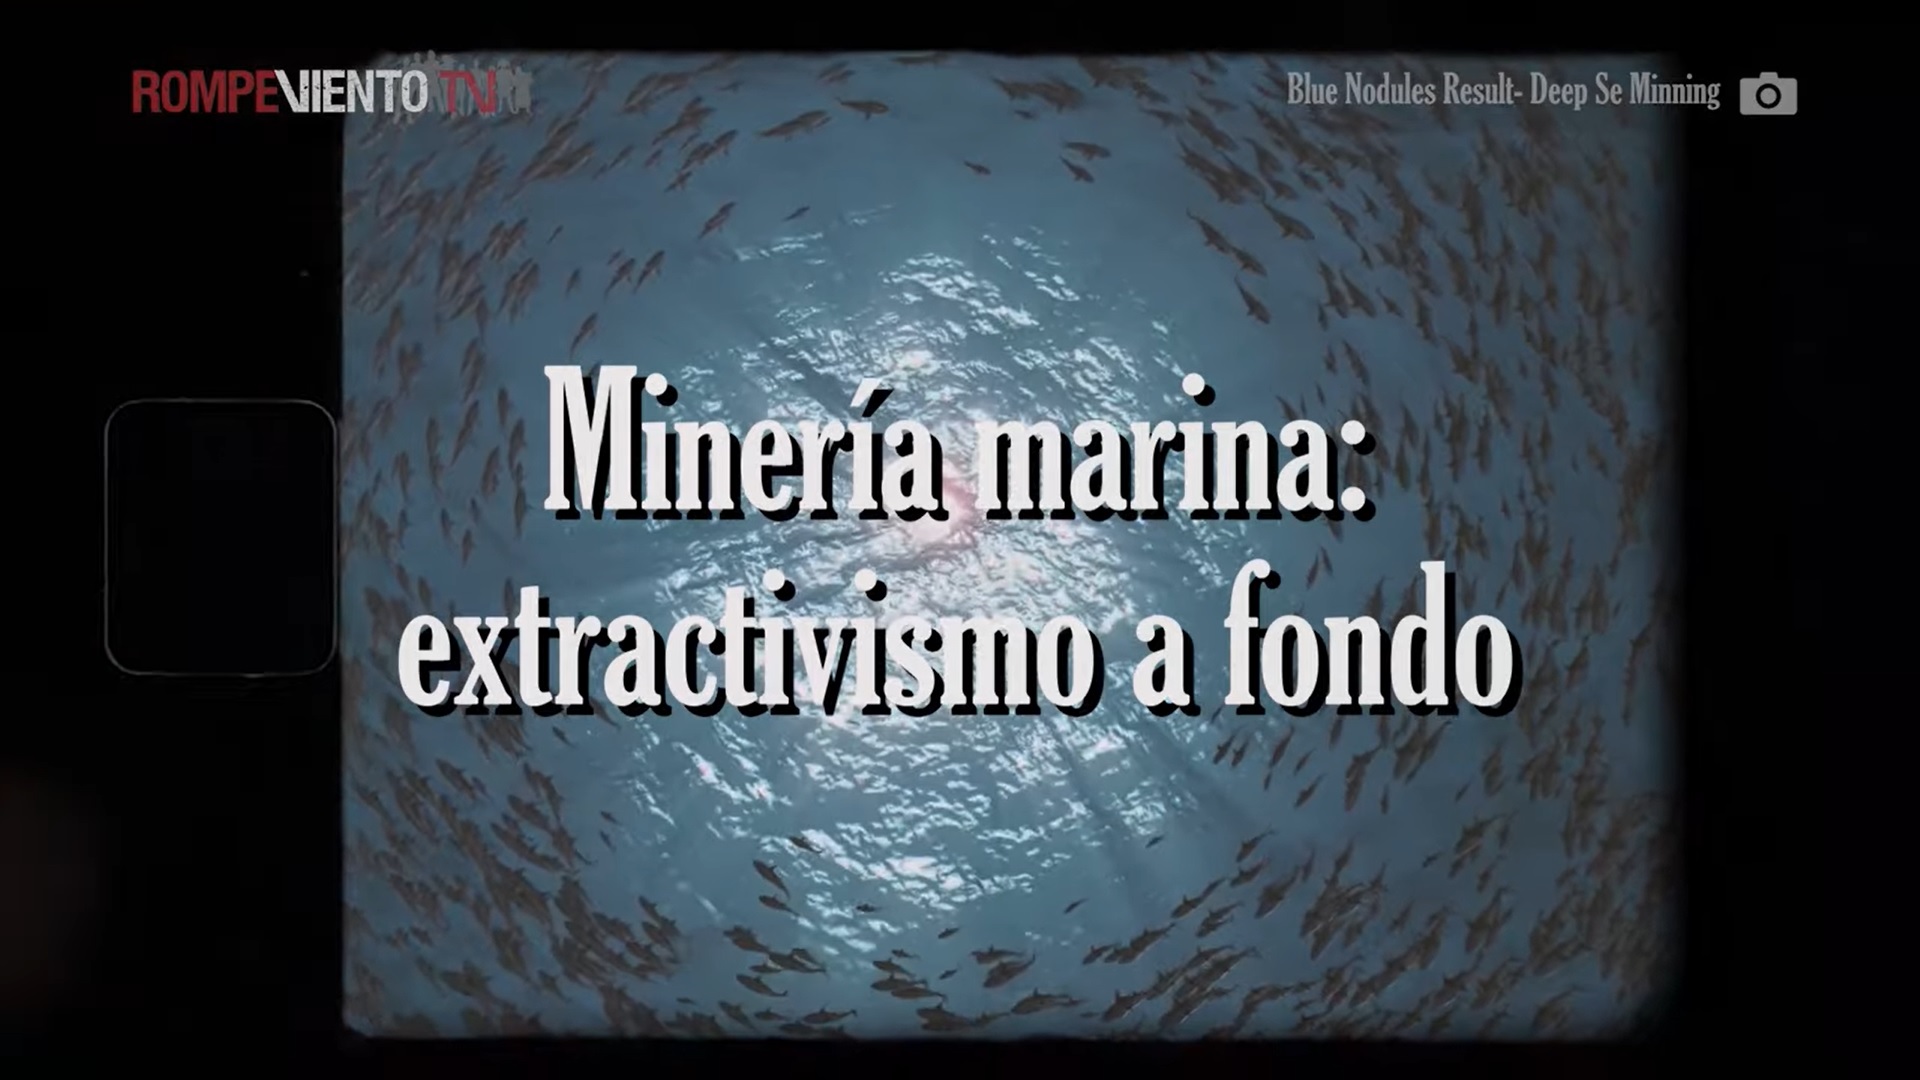 Minería marina: extractivismo a fondo